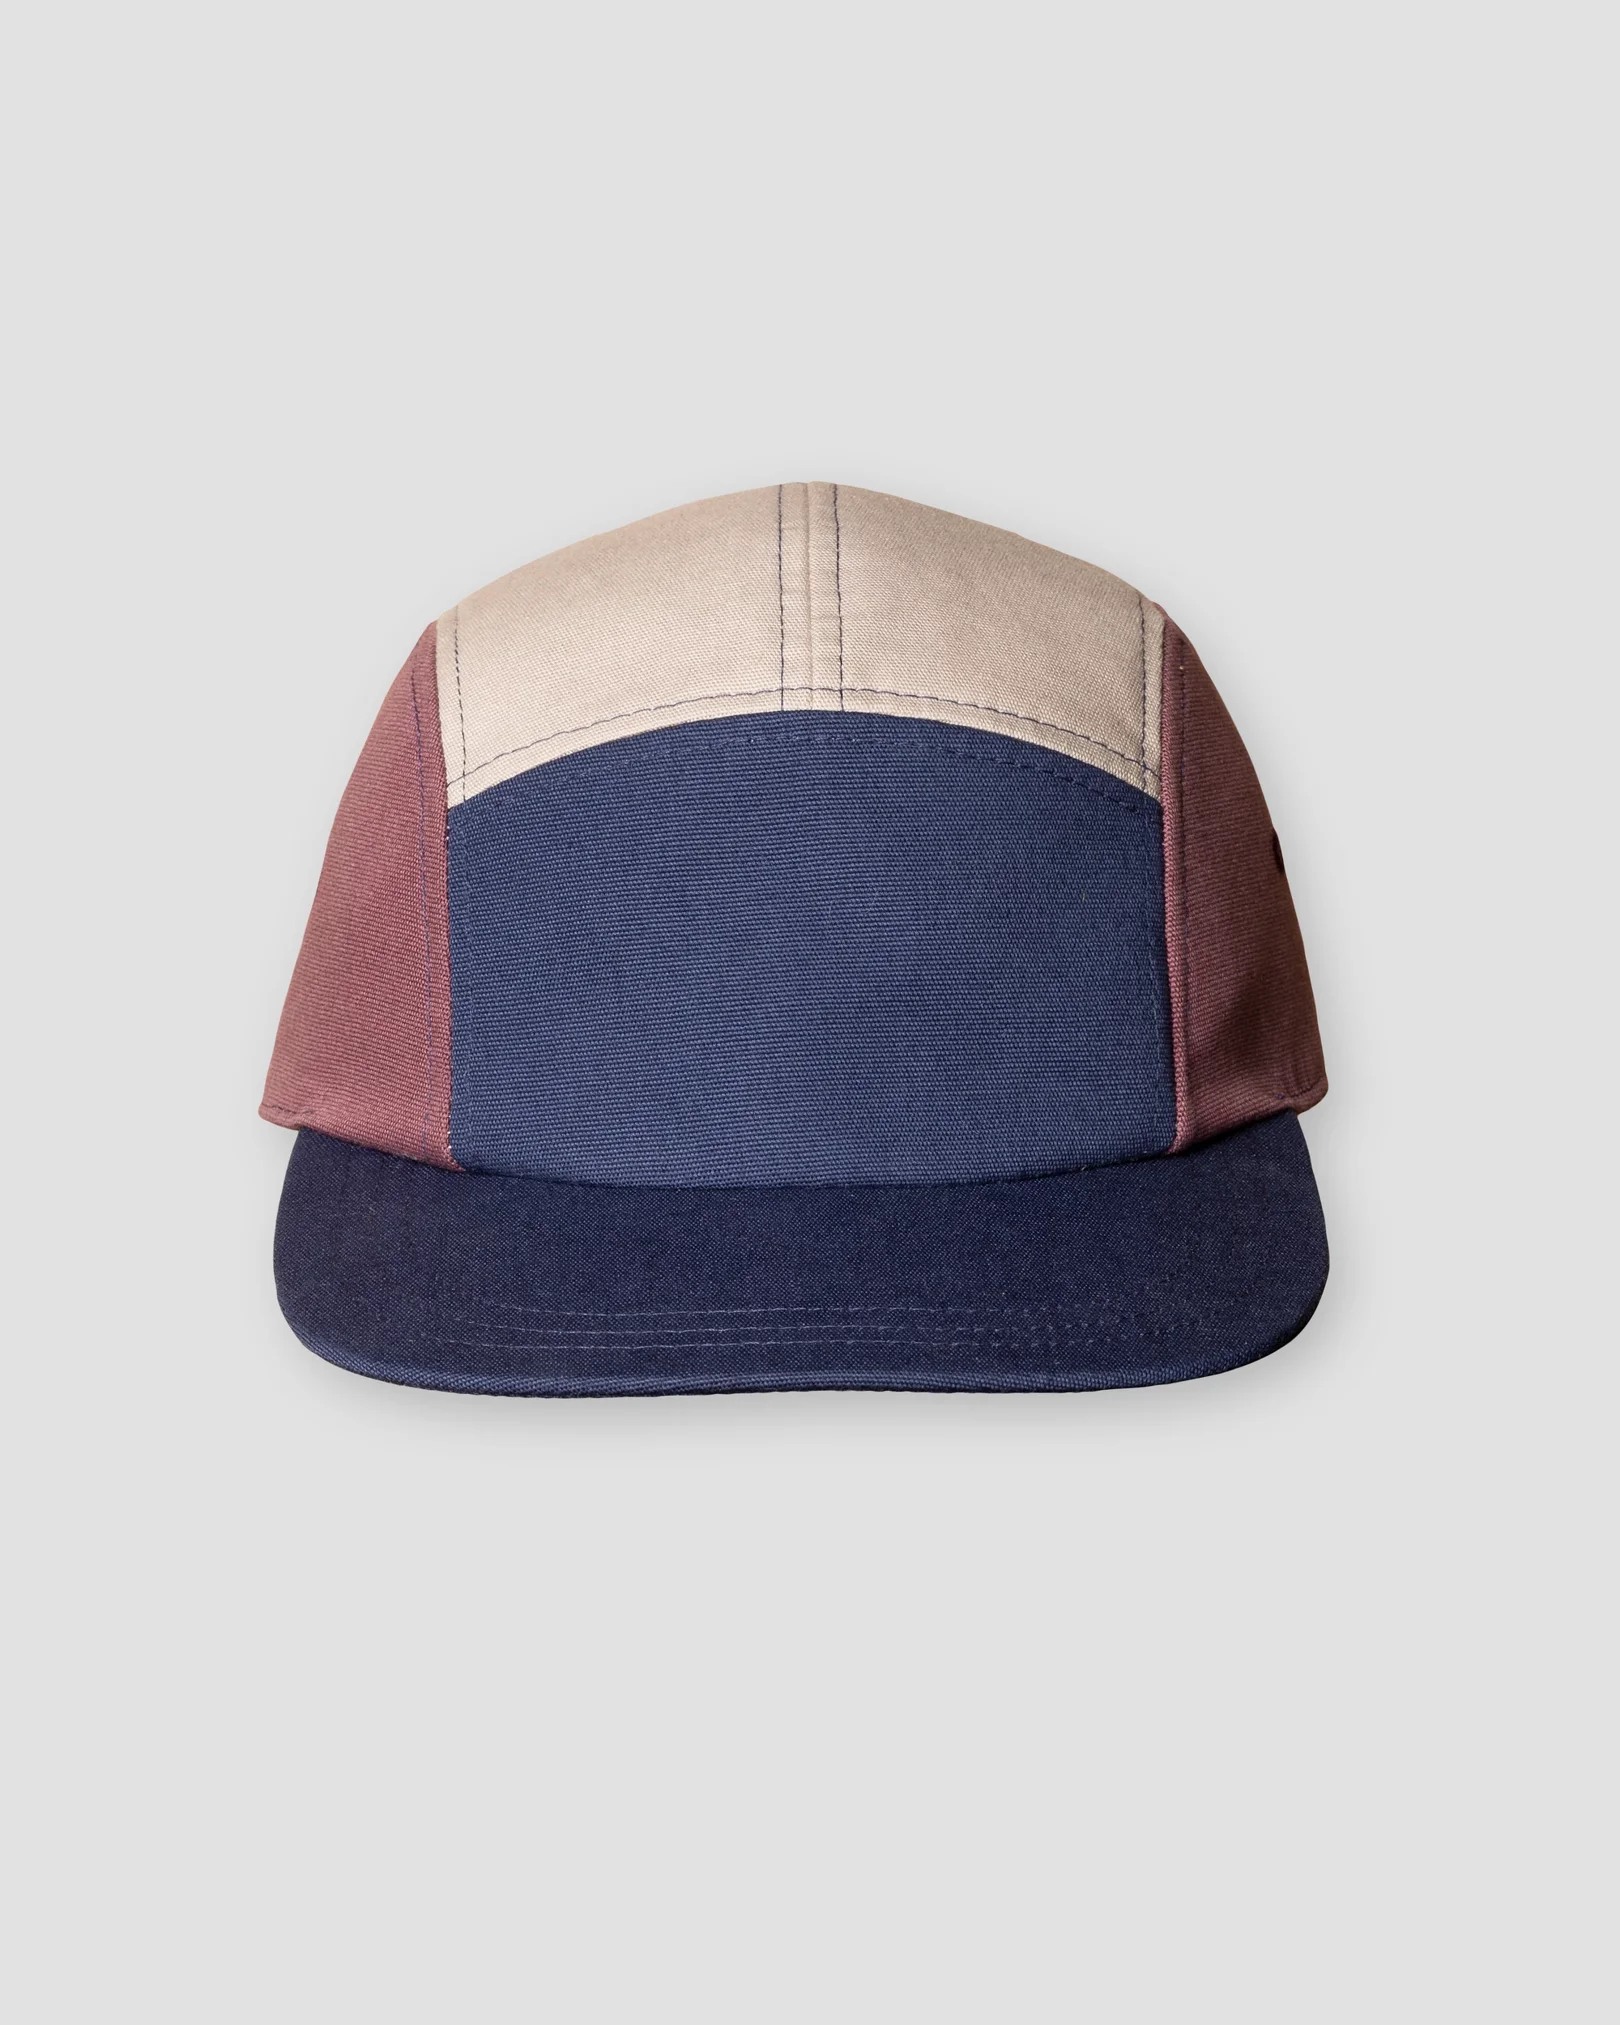 Eton - navy blue grosgrain cap